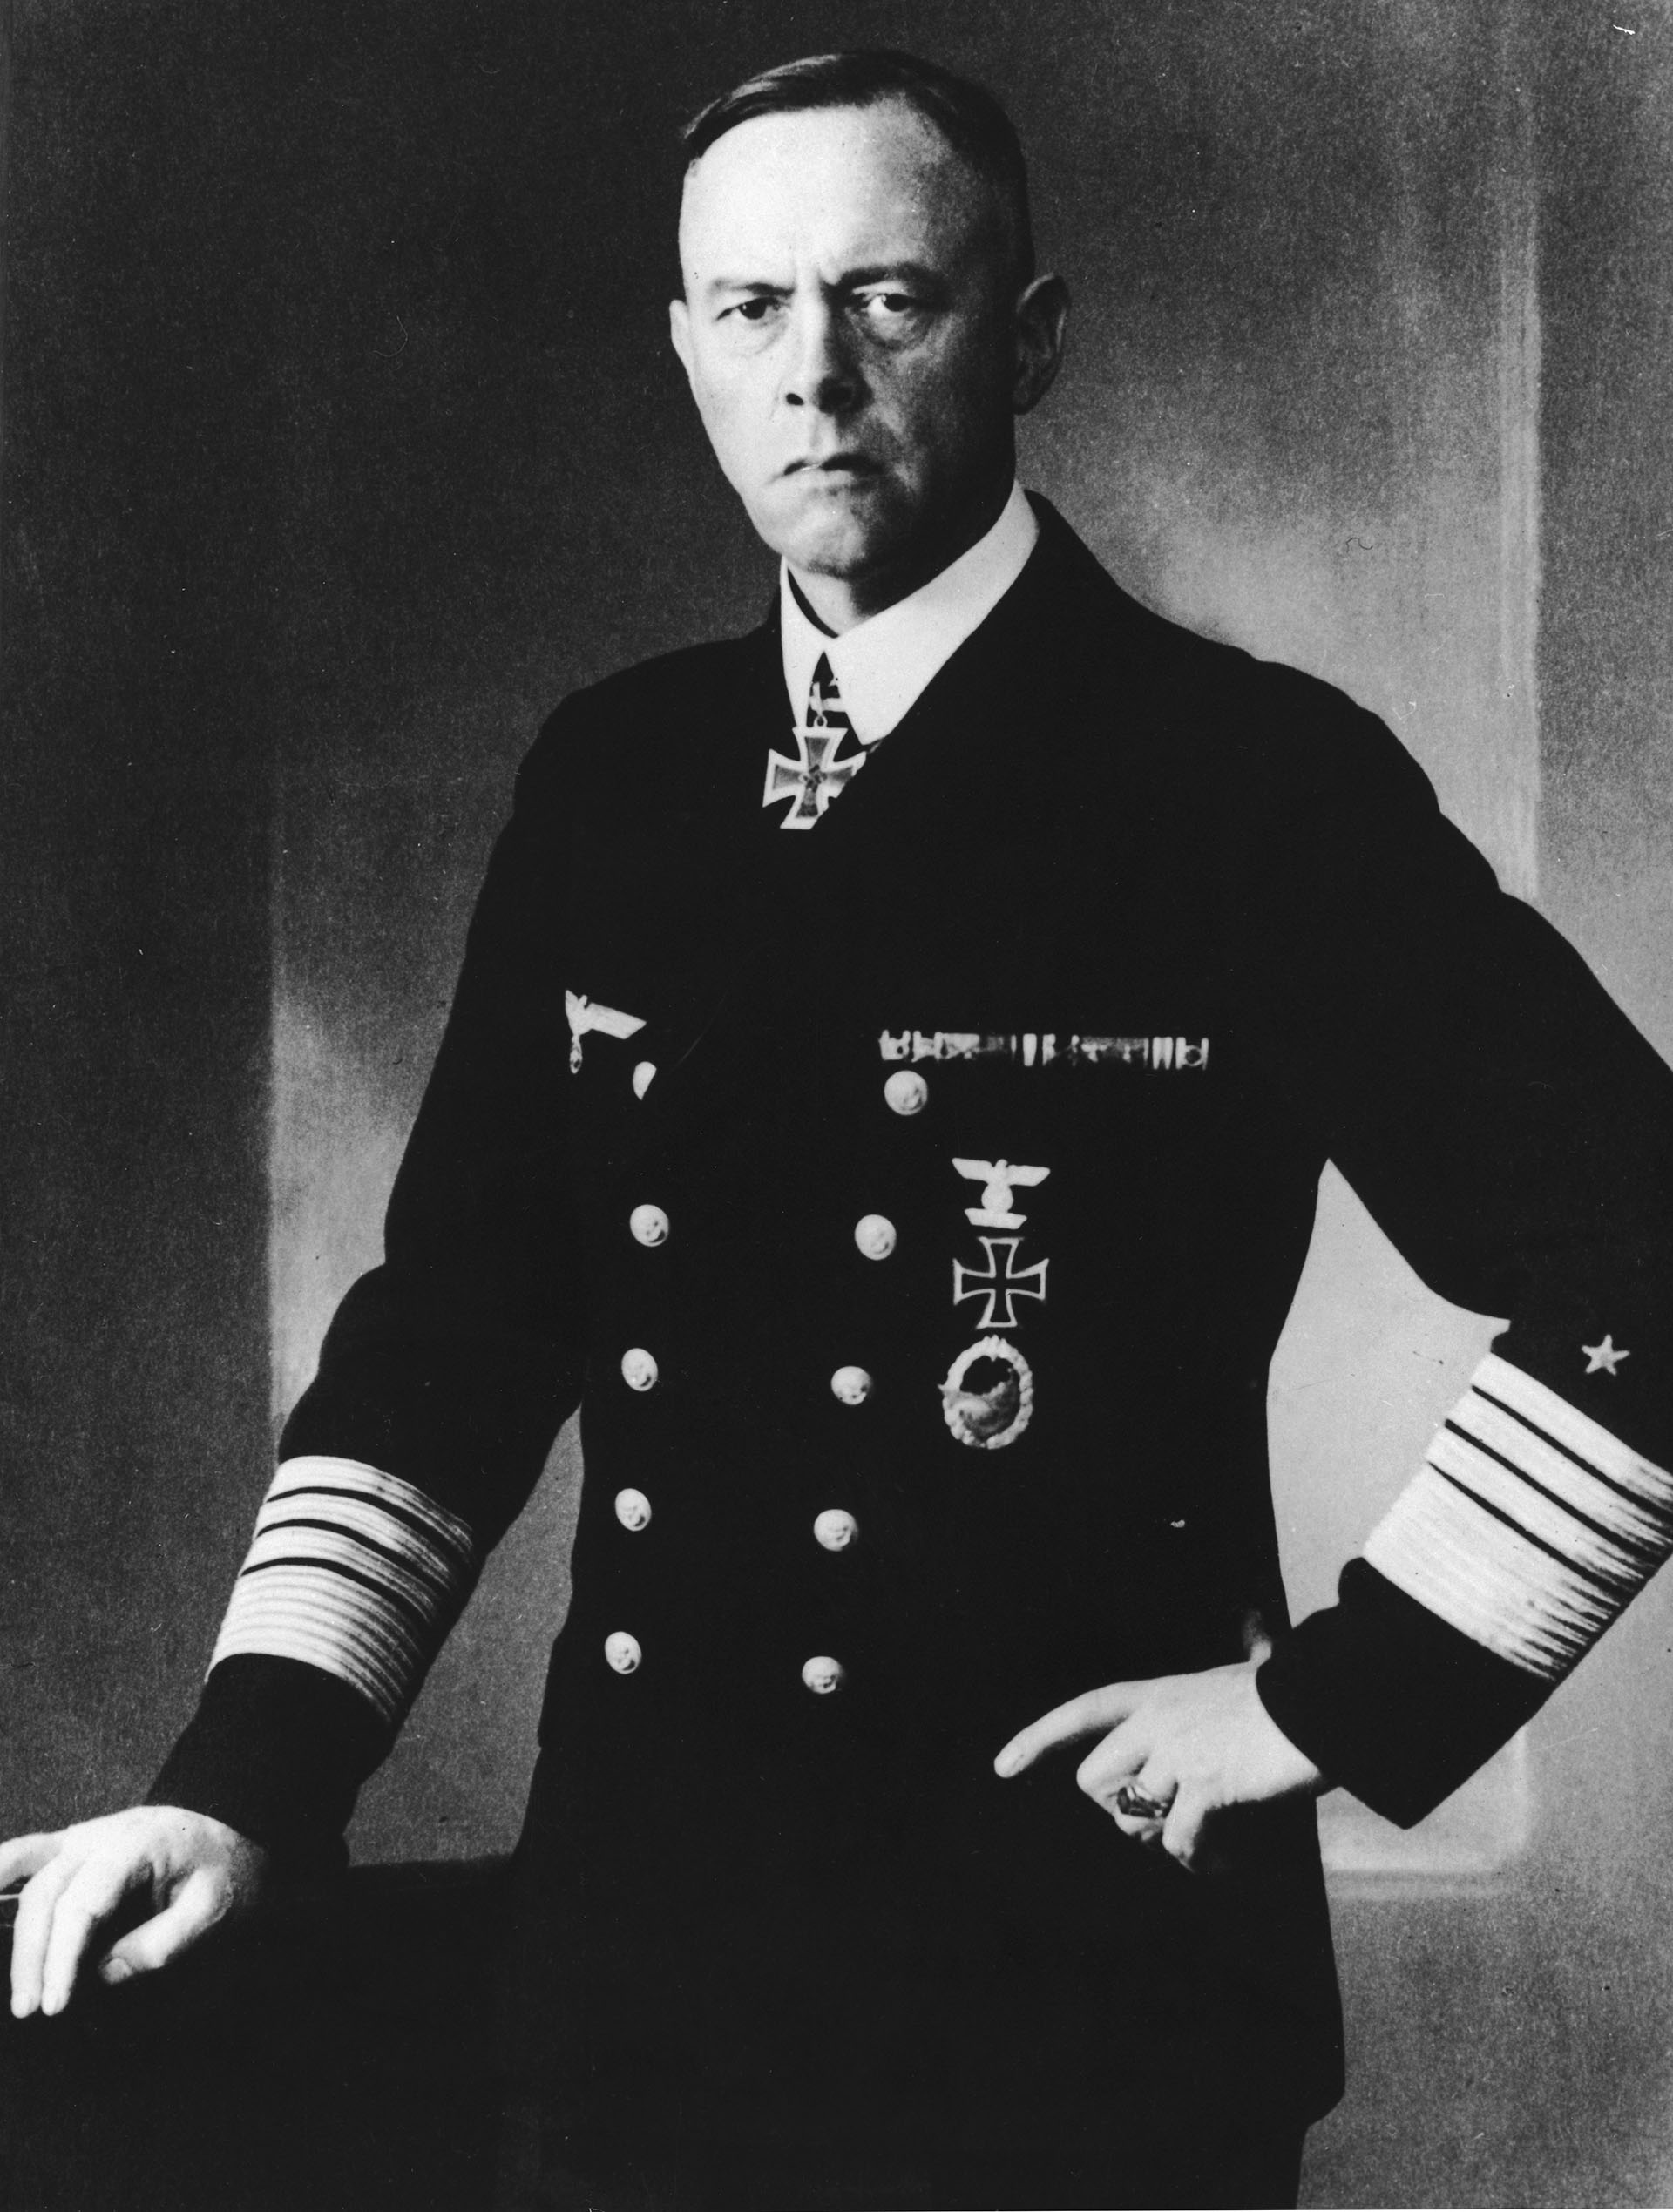 El comandante naval alemán de la Segunda Guerra Mundial, el almirante Gunther Lutjens (Keystone/Hulton Archive/Getty Images)
